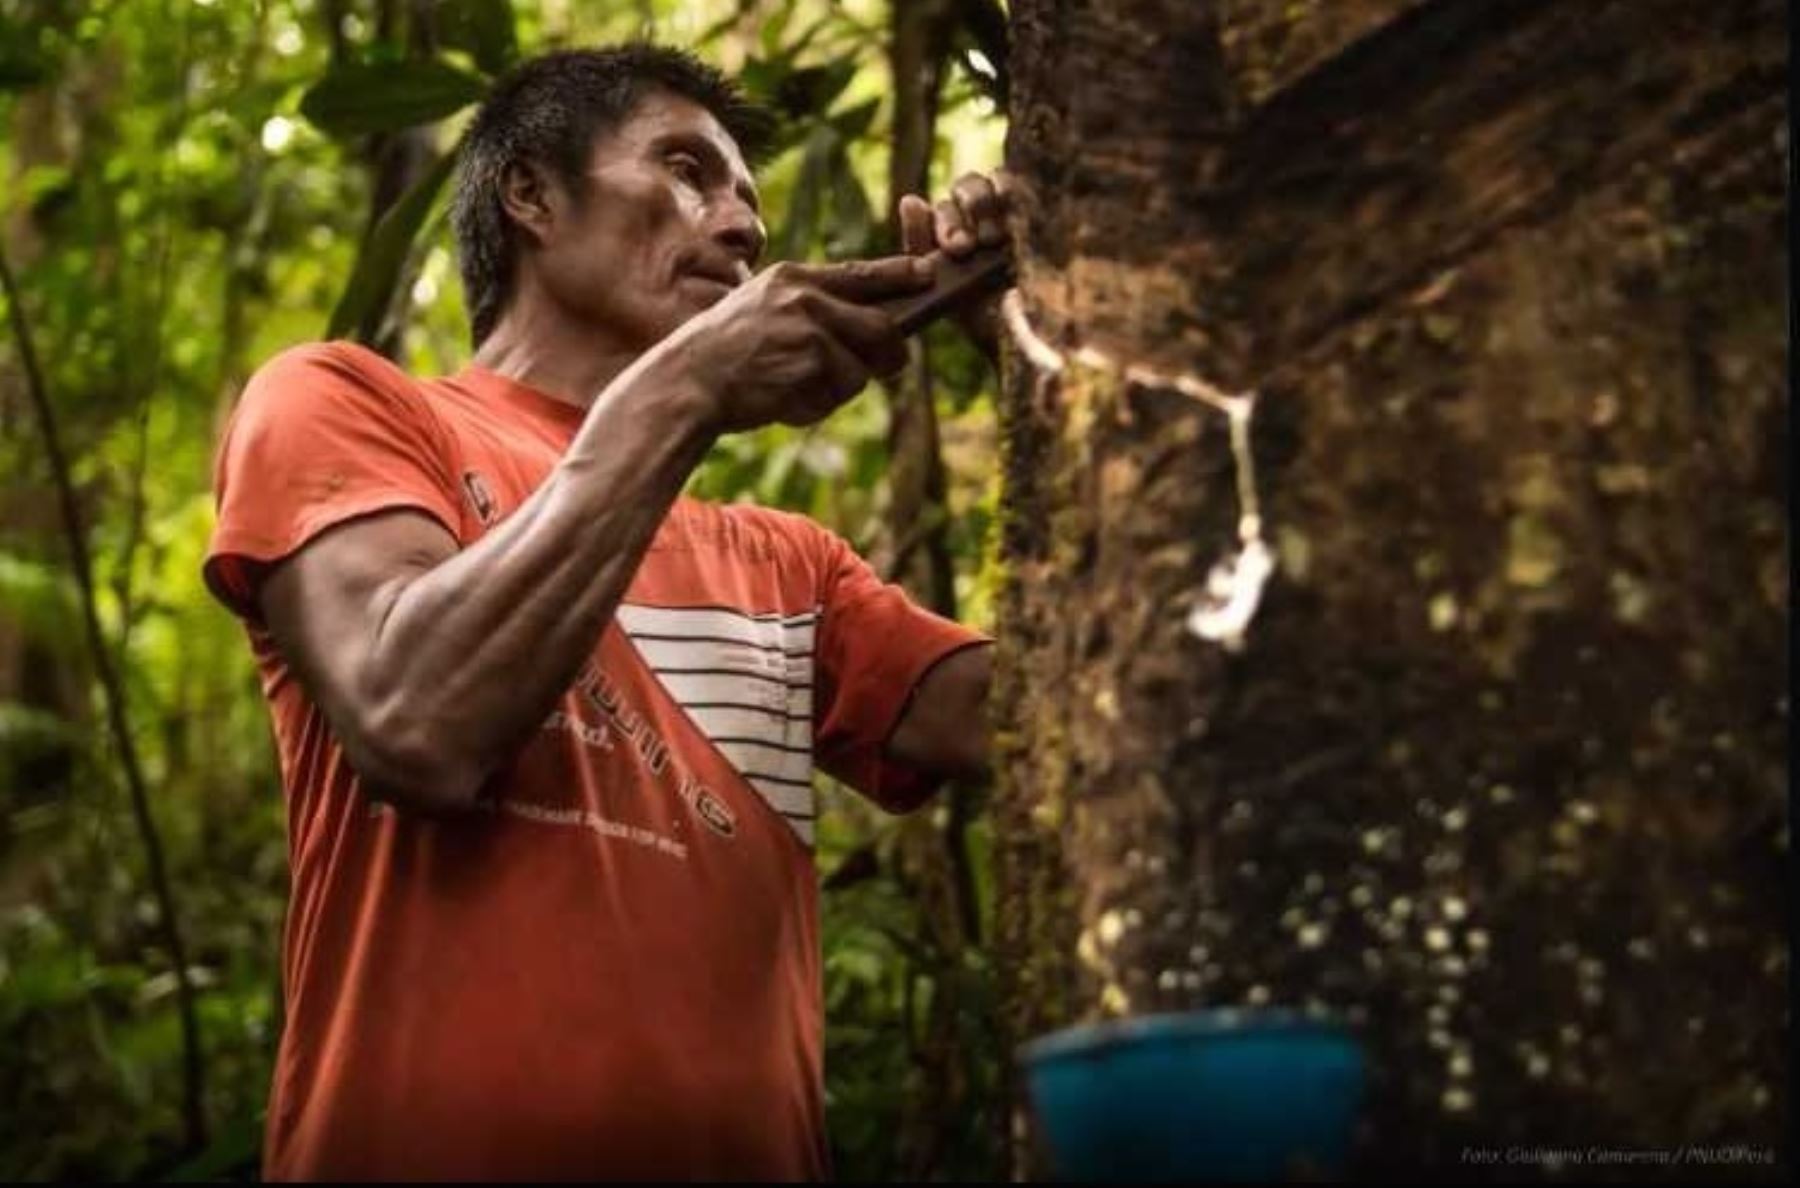 Siete comunidades indígenas en la provincia de Condorcanqui, región Amazonas, se beneficiarán este año con el proyecto “Mejoramiento de los Servicios para la Promoción y el Aprovechamiento Sostenible del Recurso Shiringa”.